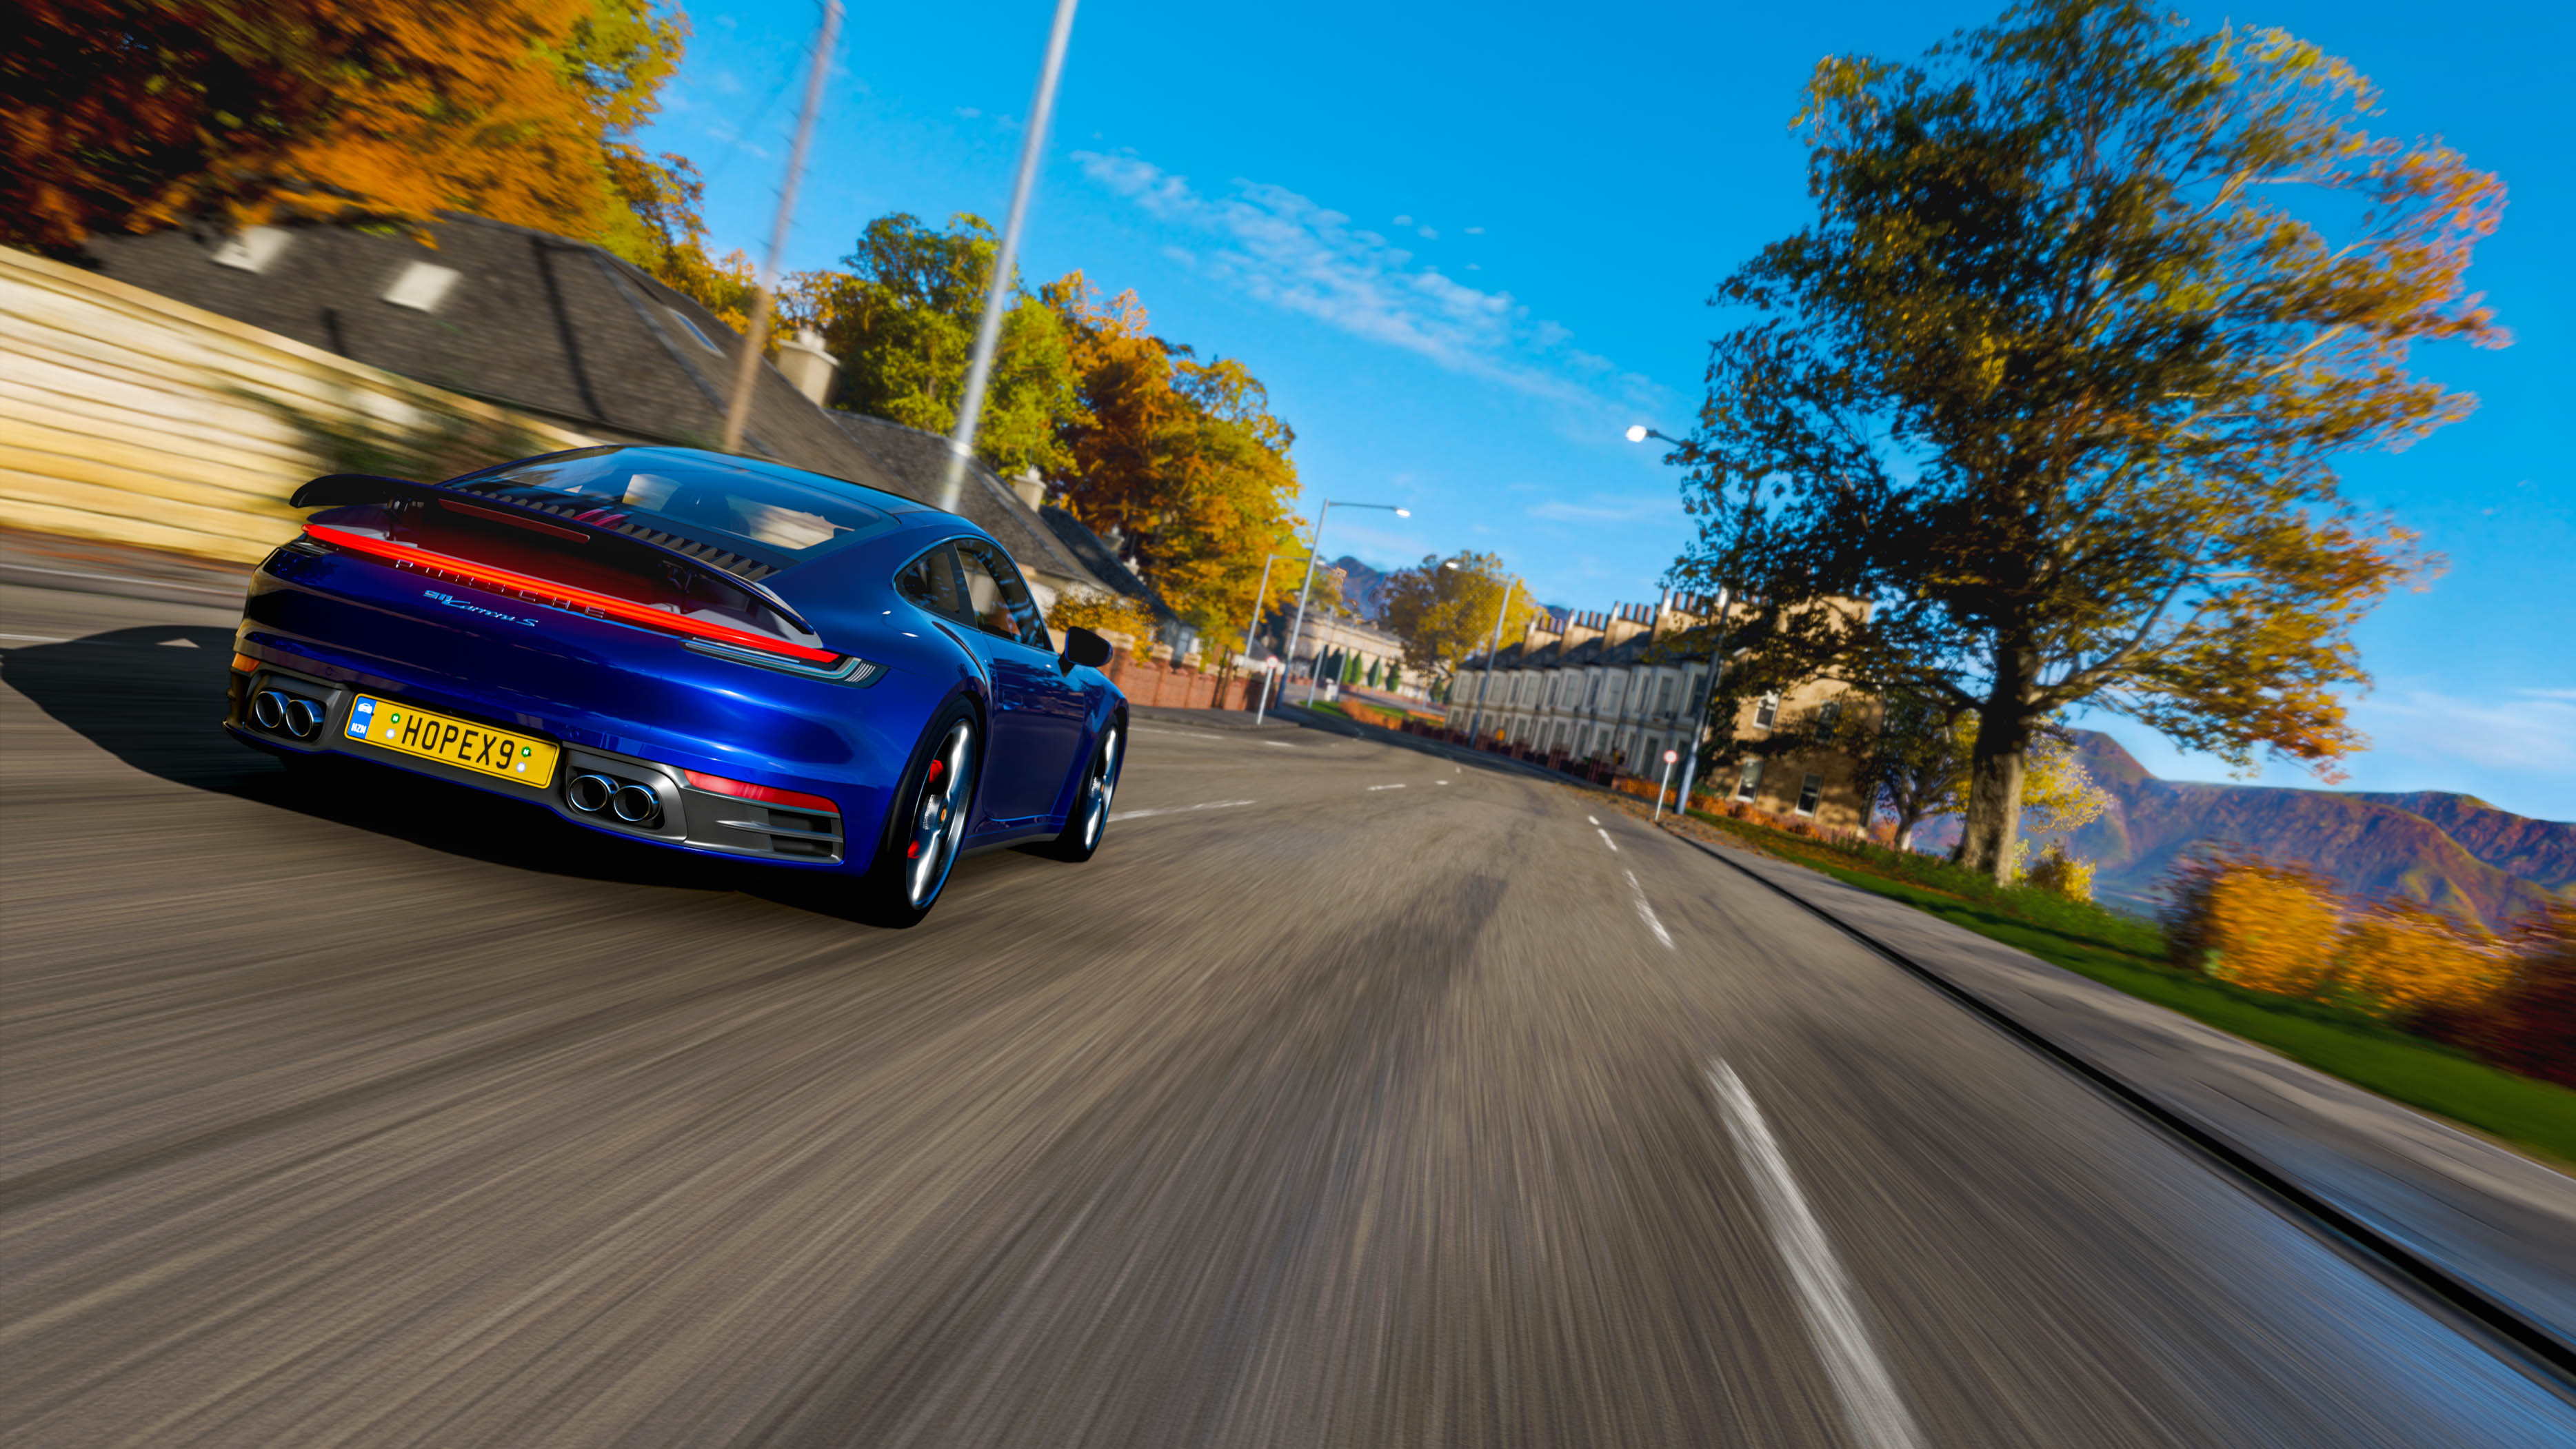 Forza Horizon 4 Car Video Games Porsche 911 Carrera S 3736x2102